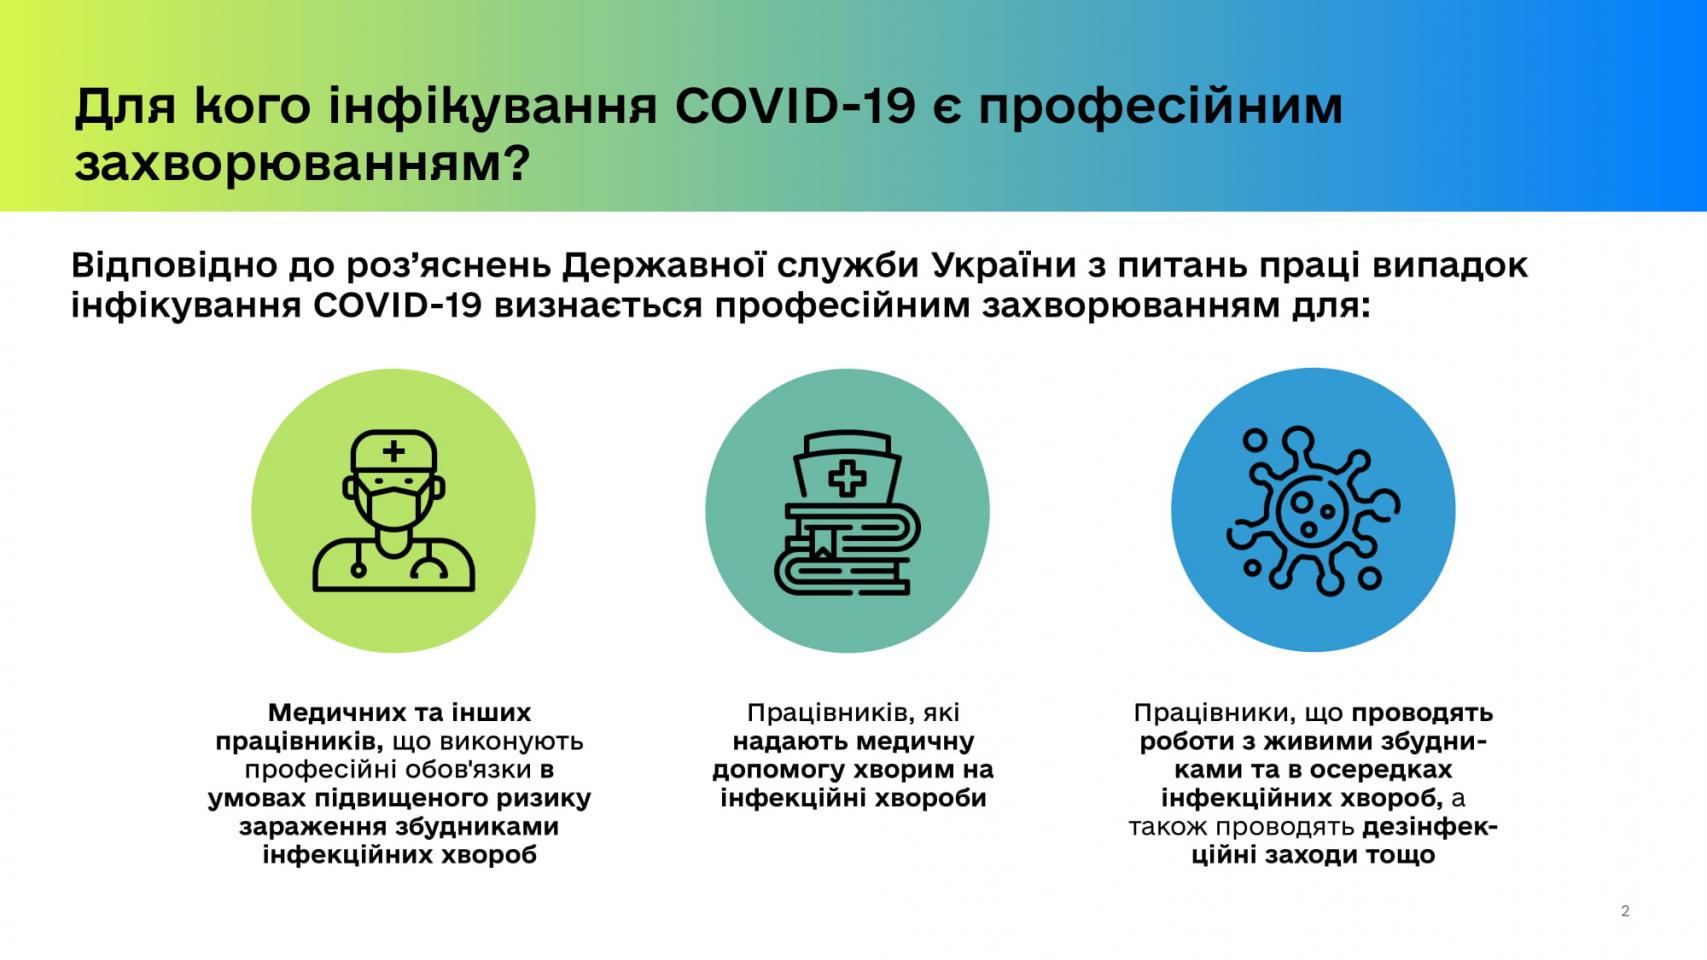 http://dunrada.gov.ua/uploadfile/archive_news/2020/04/28/2020-04-28_3910/images/images-68639.jpg